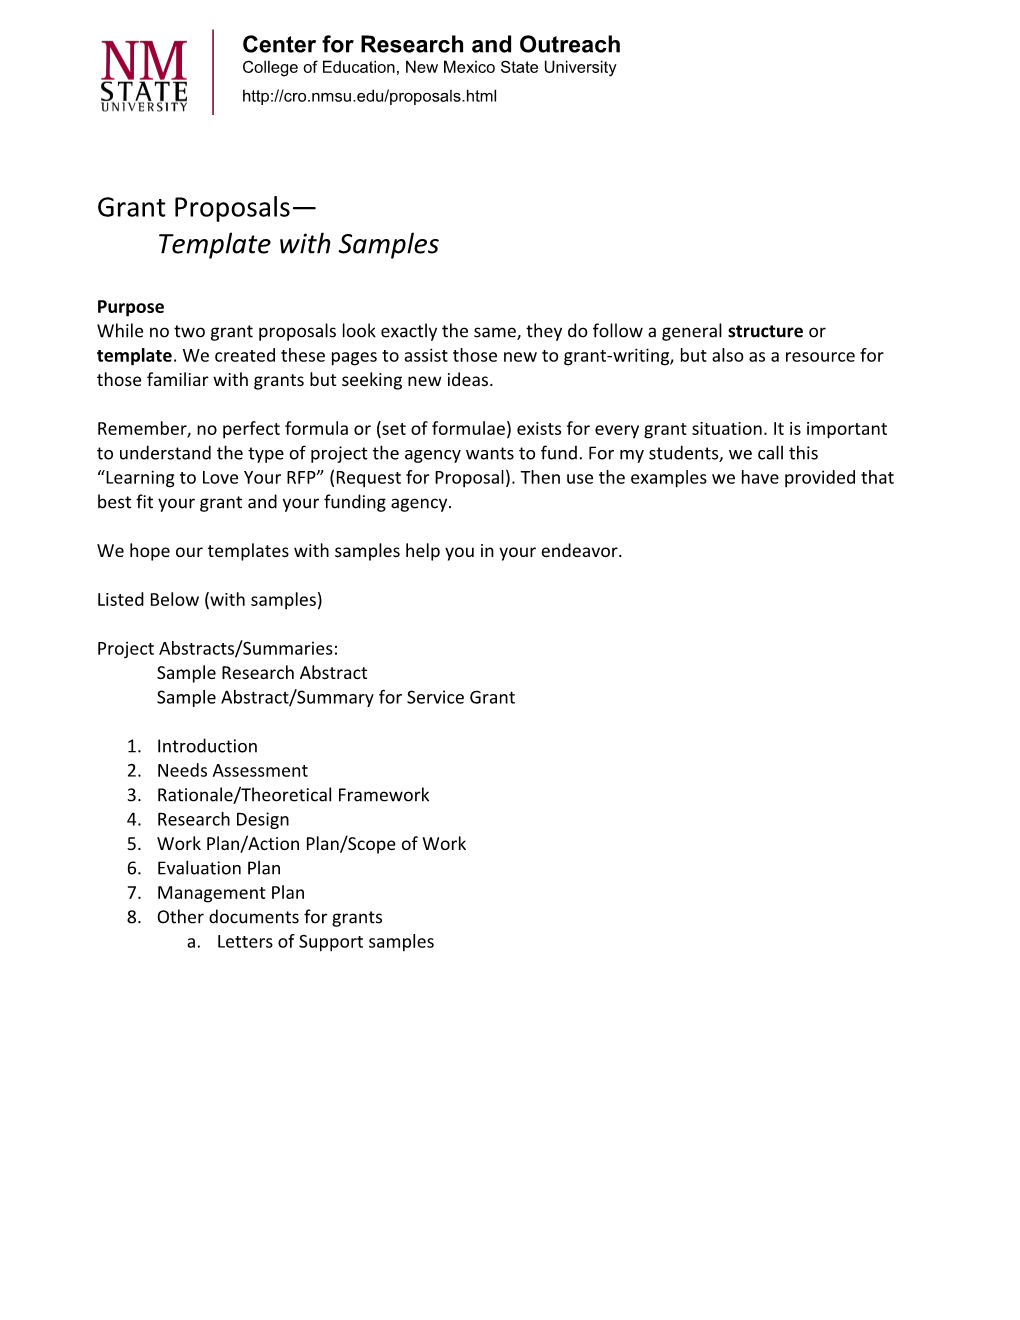 Grant Proposals